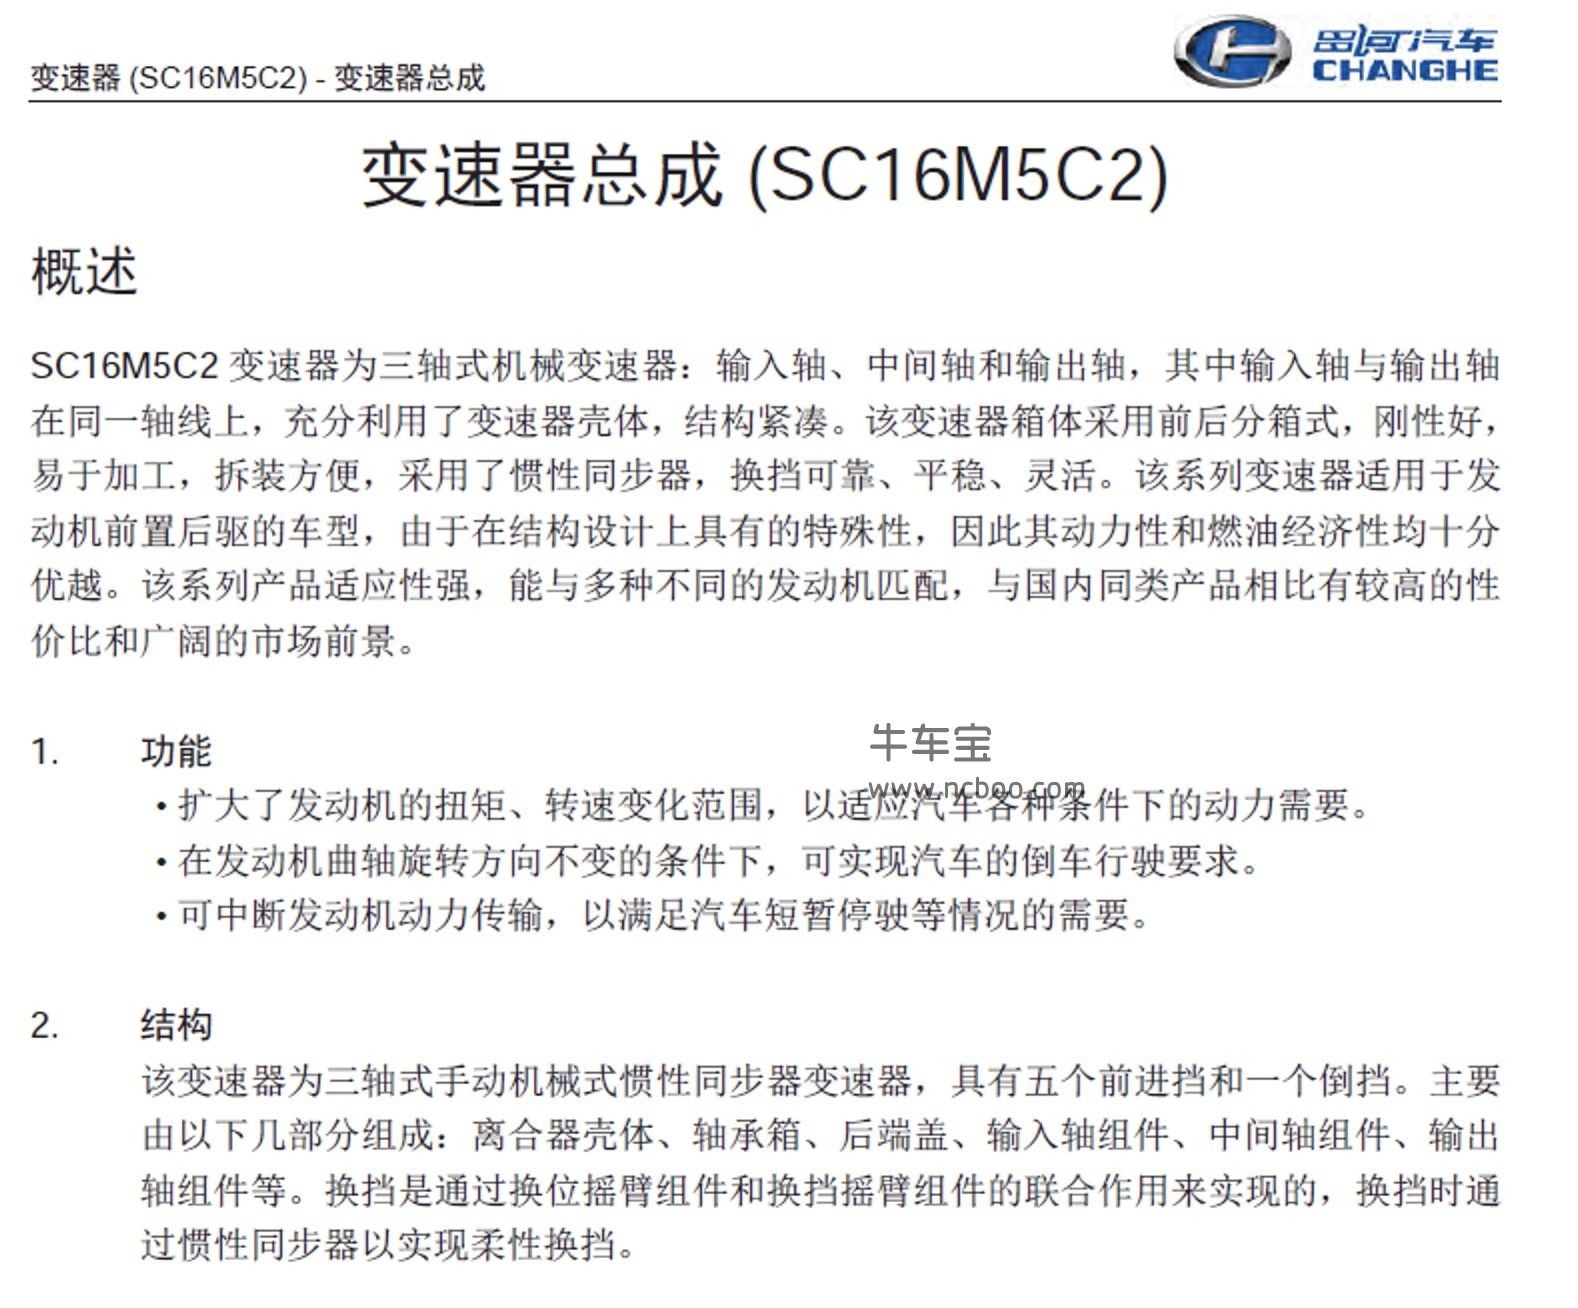 2017-2019款昌河M70原厂维修手册和电路图下载